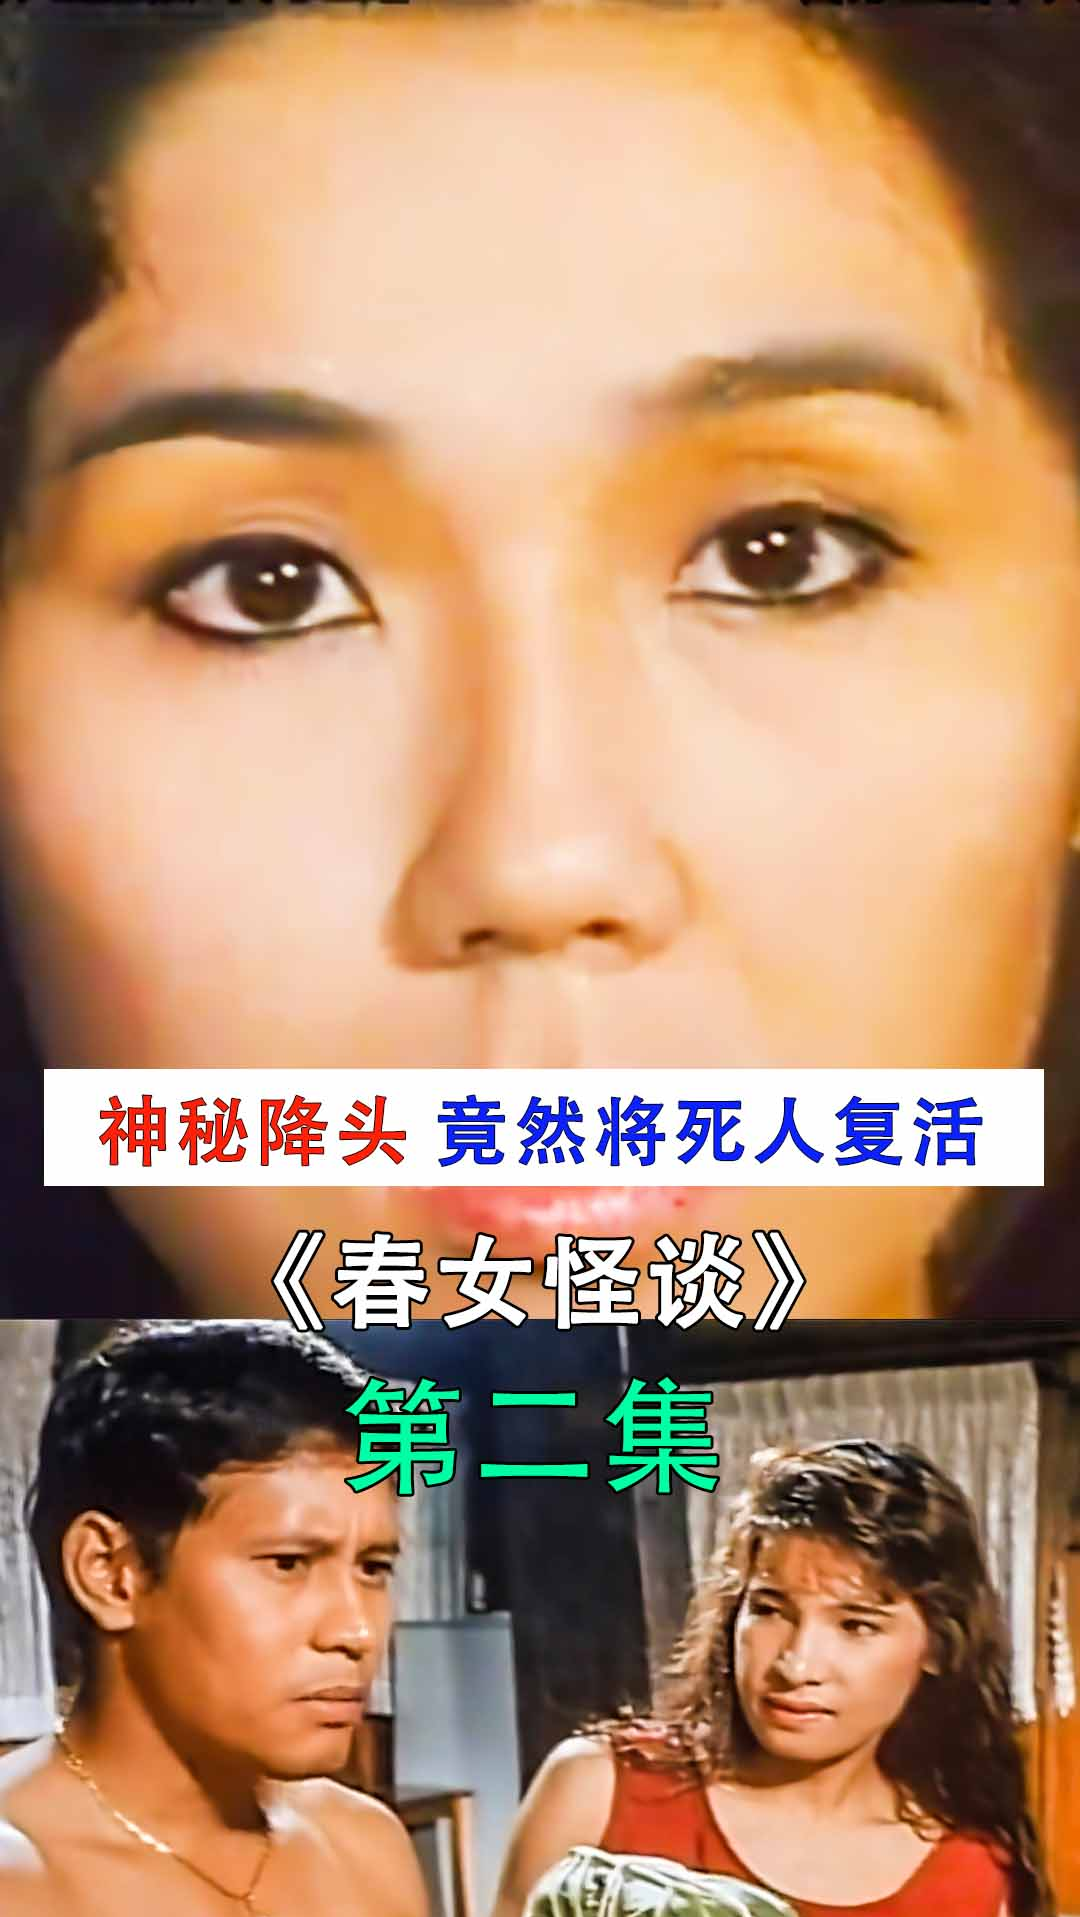 香港电影南洋神秘降头术竟然将死人变成美女惊悚电影春女怪谈